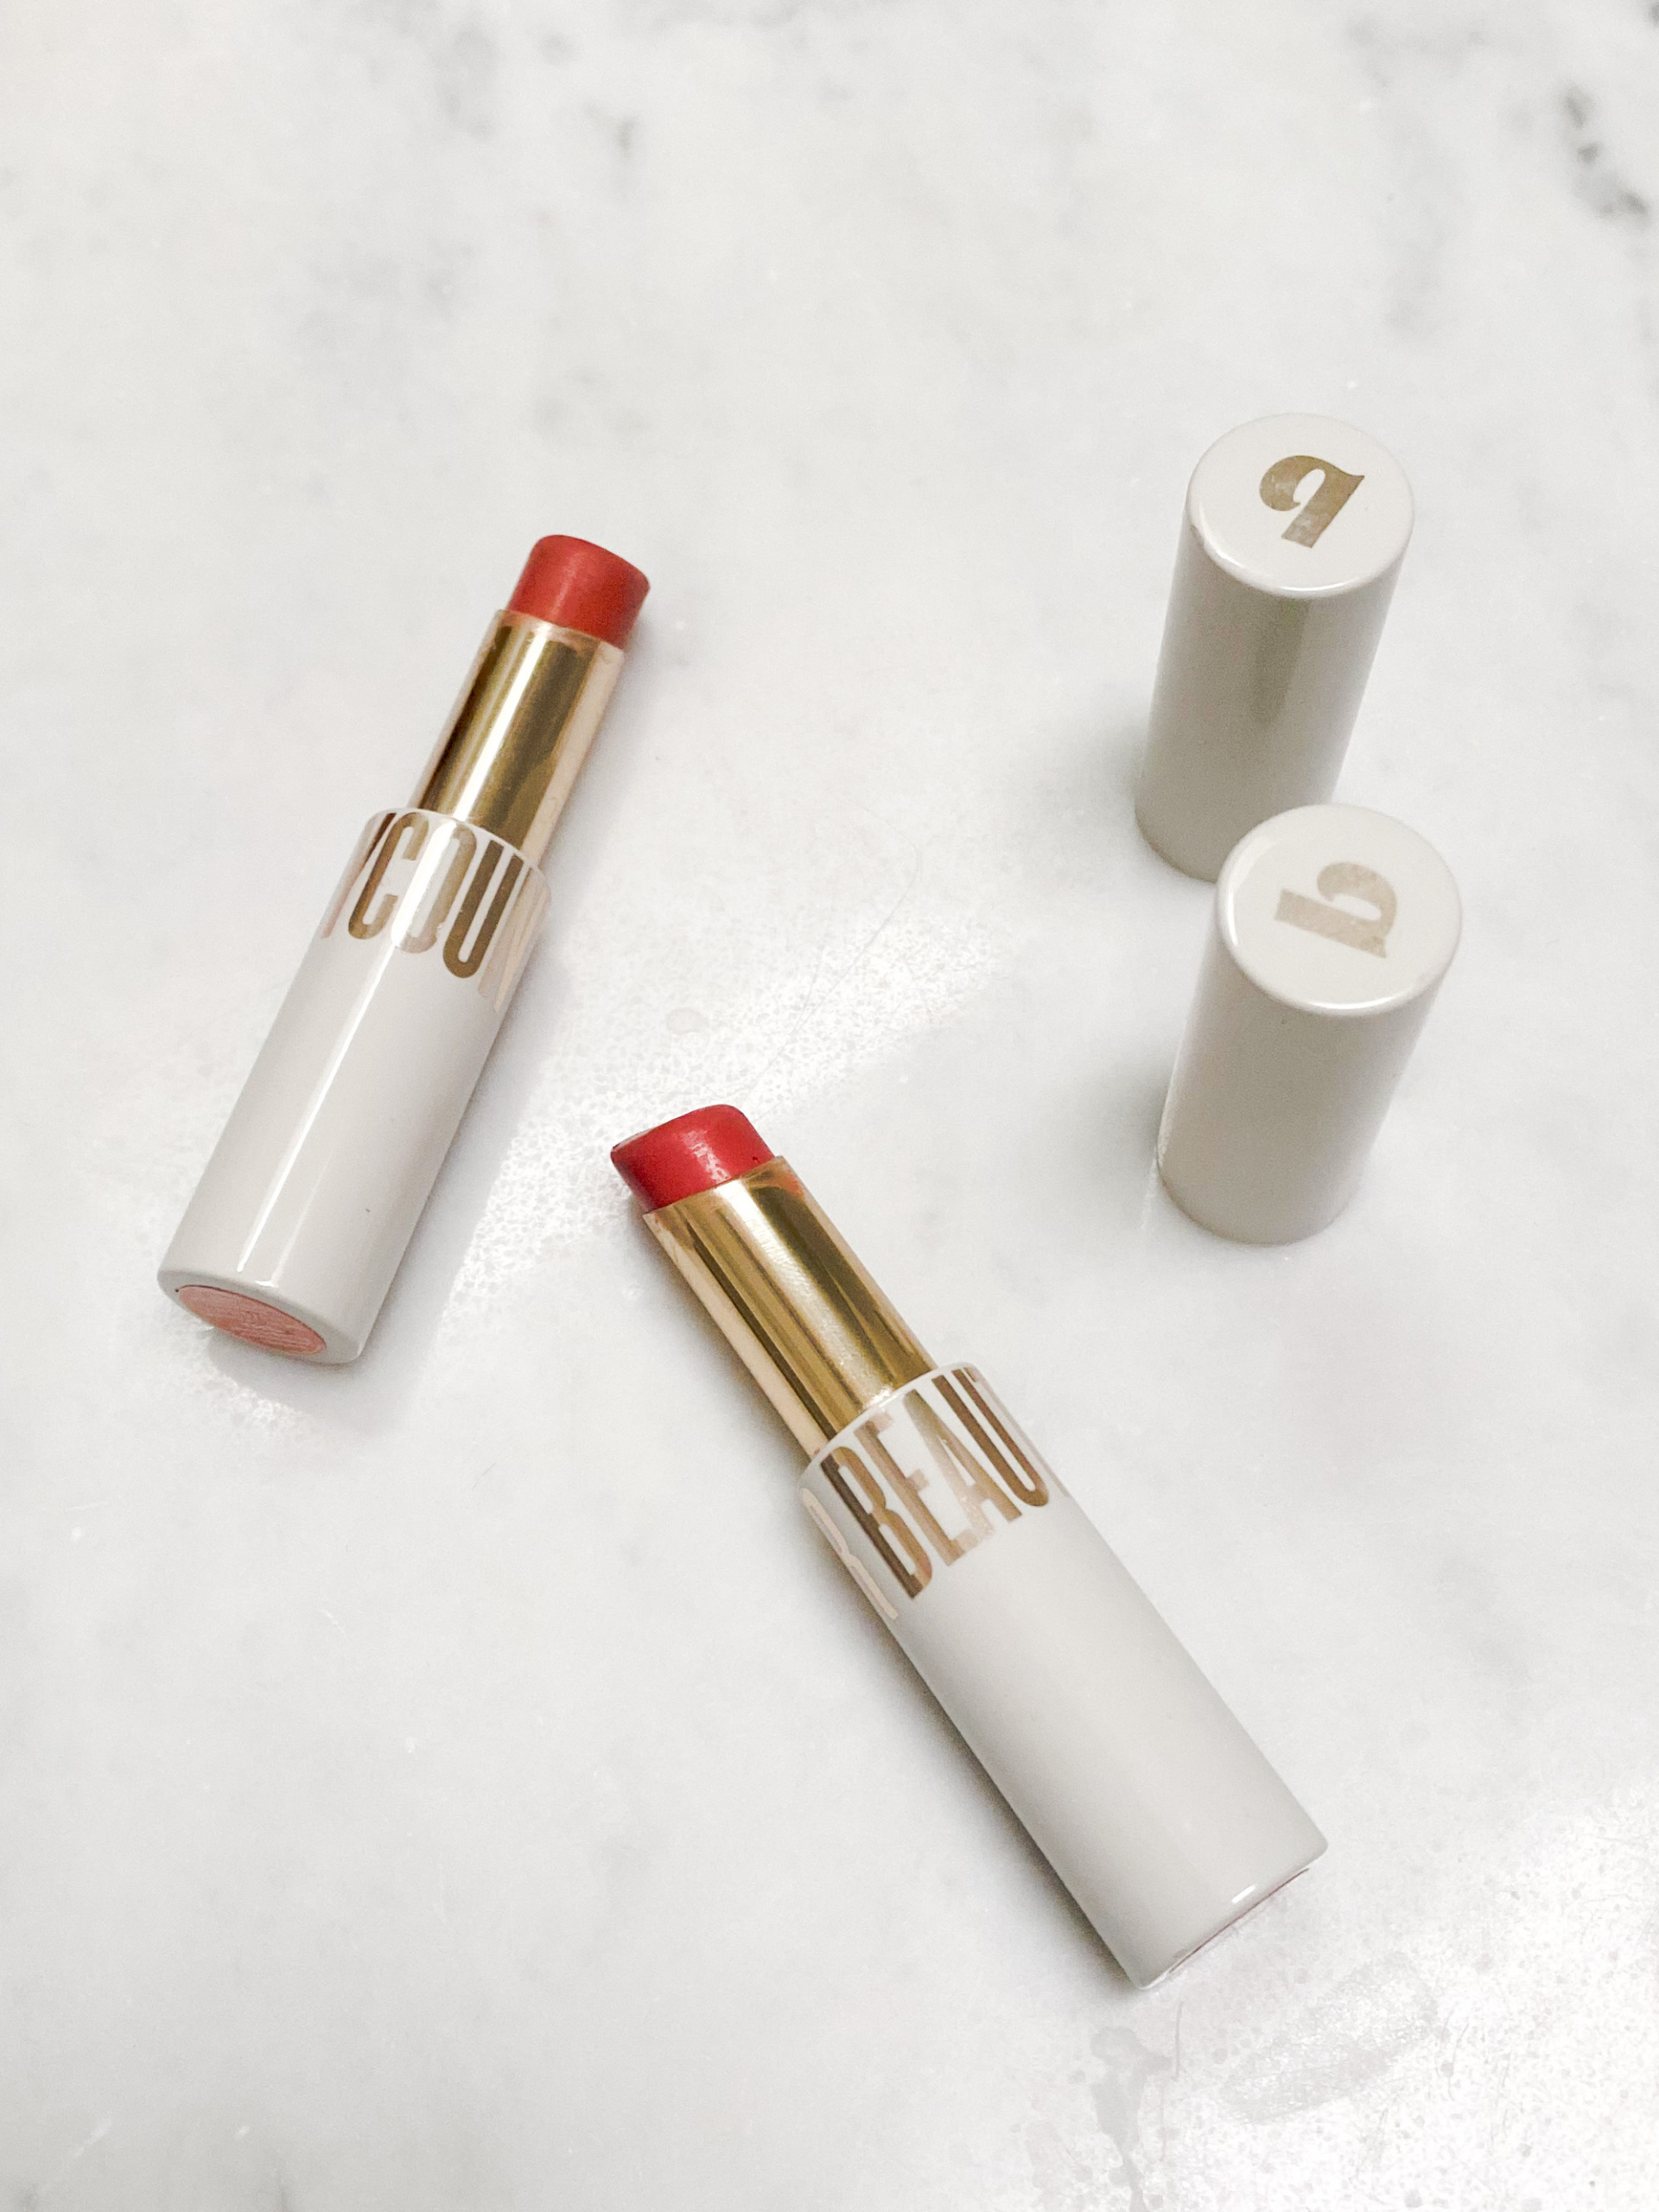 Best clean lipstick, beauty counter sheer lipstick review, best non toxic lipstick, nude lipstick shades